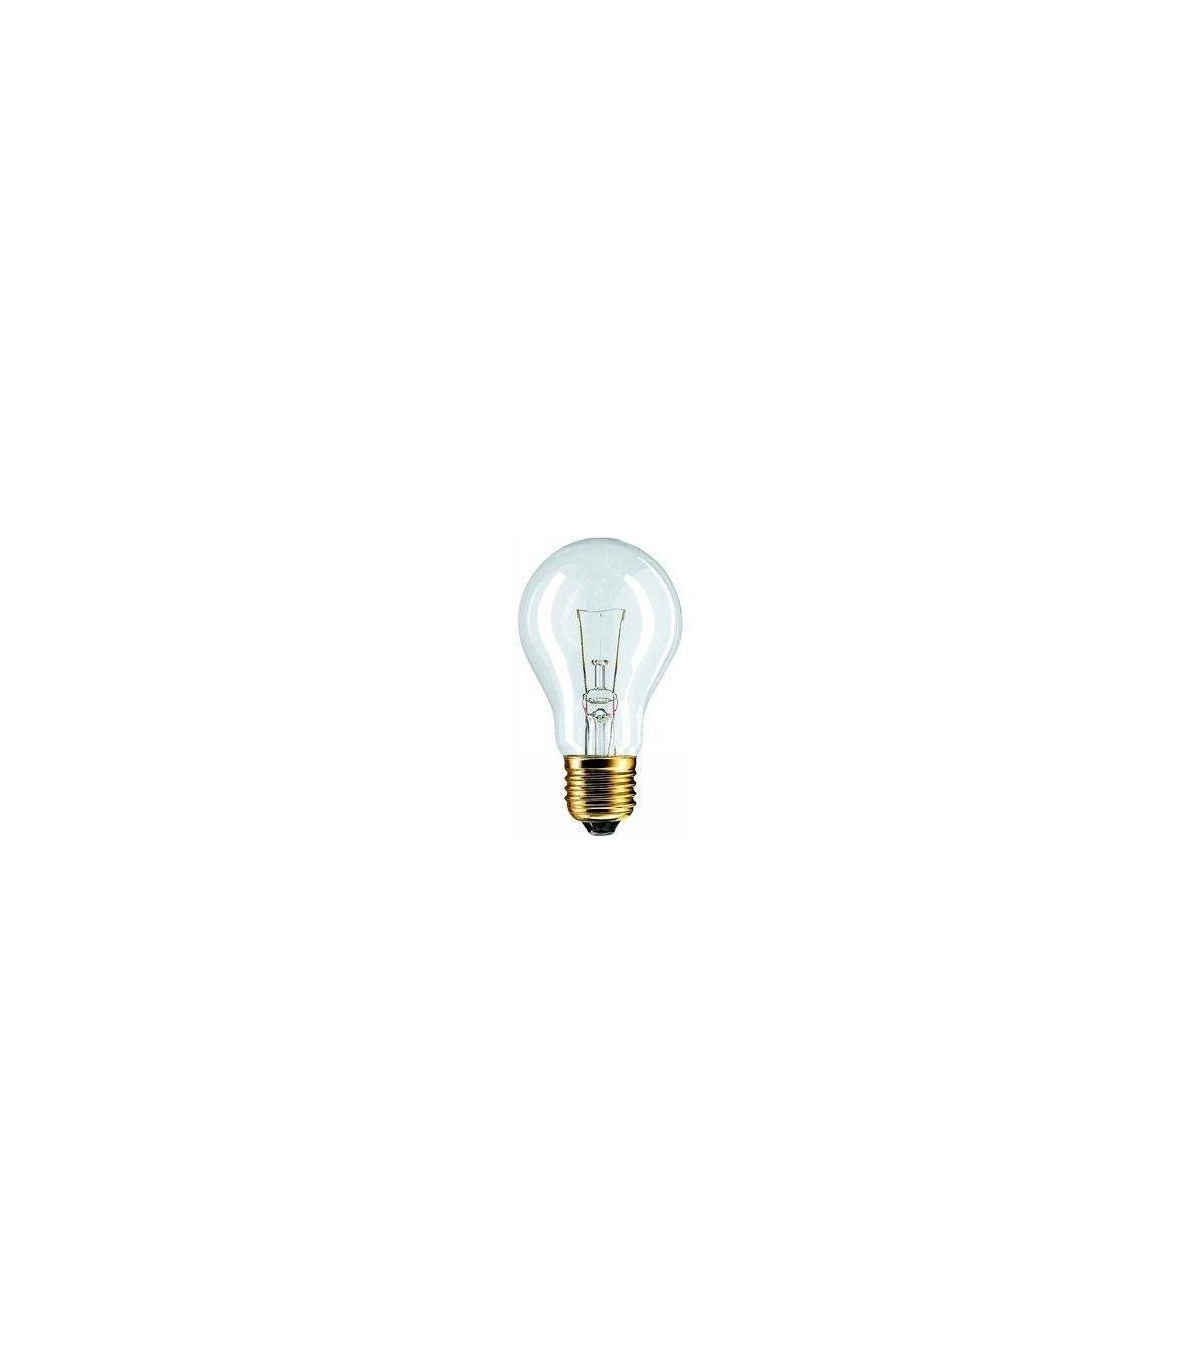 Ampoule 75W E27 230V - Lampe claire incandescente filament